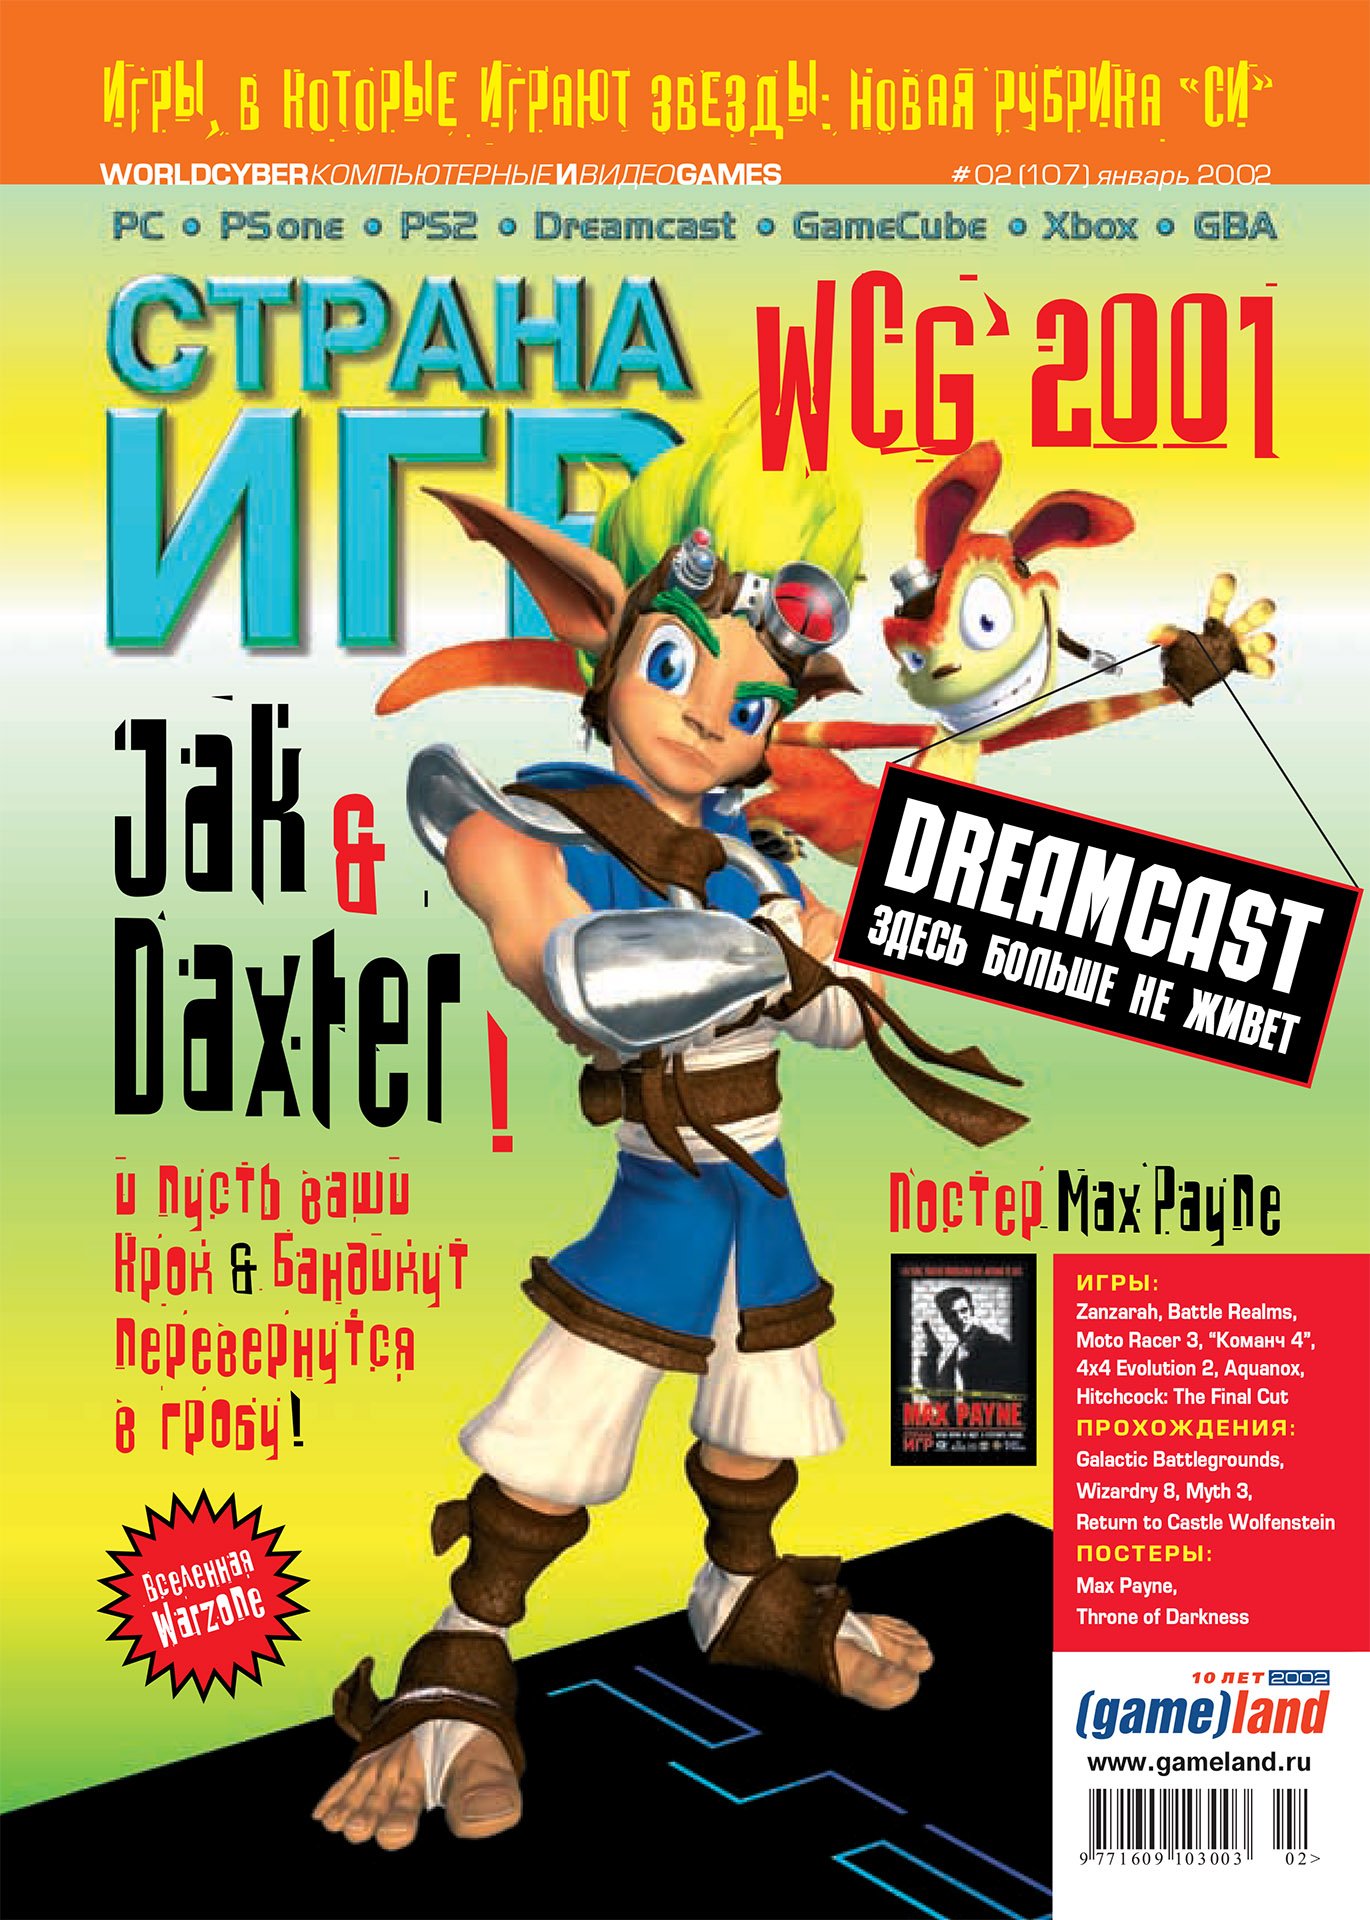 GameLand 107 January 2002